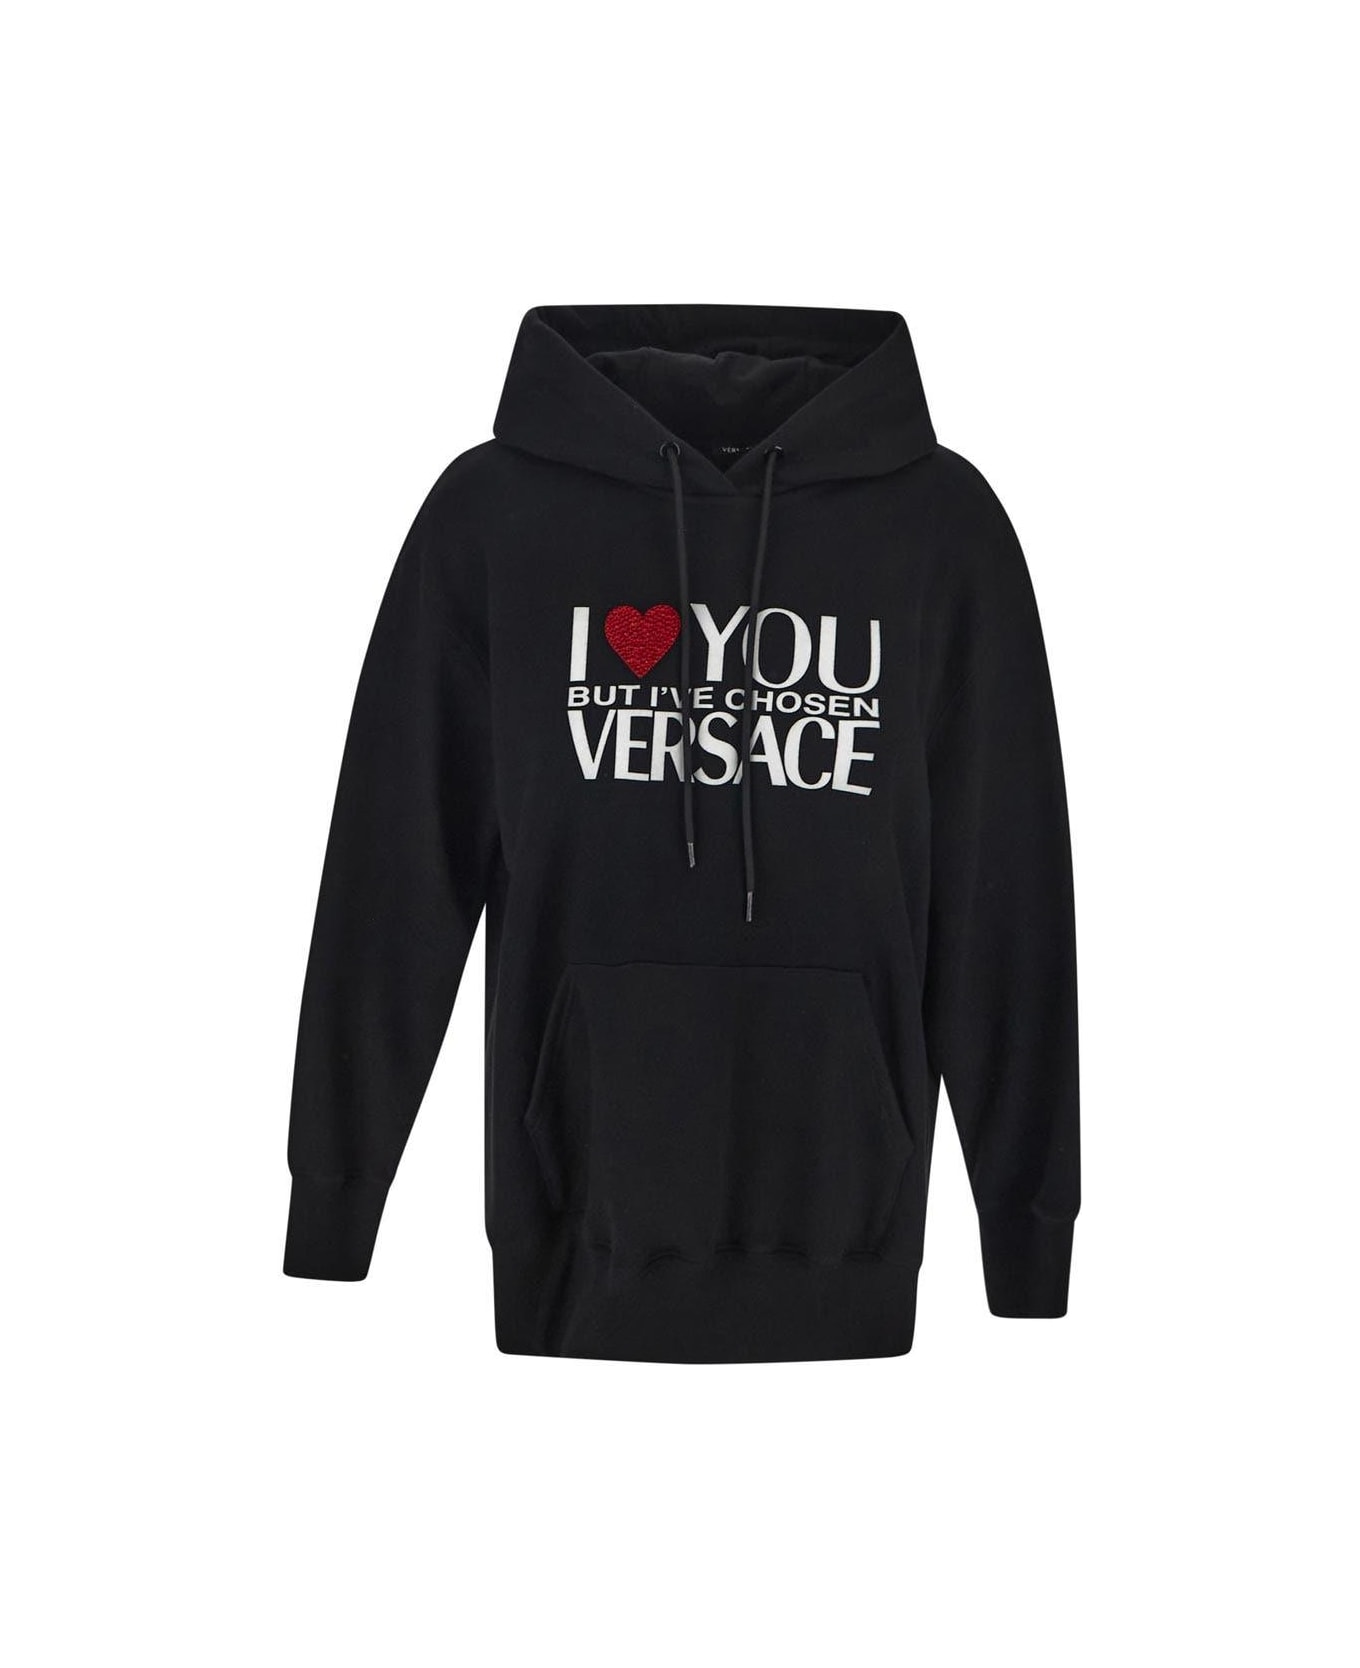 Versace 'i Love You' Black Hoodie - Black フリース